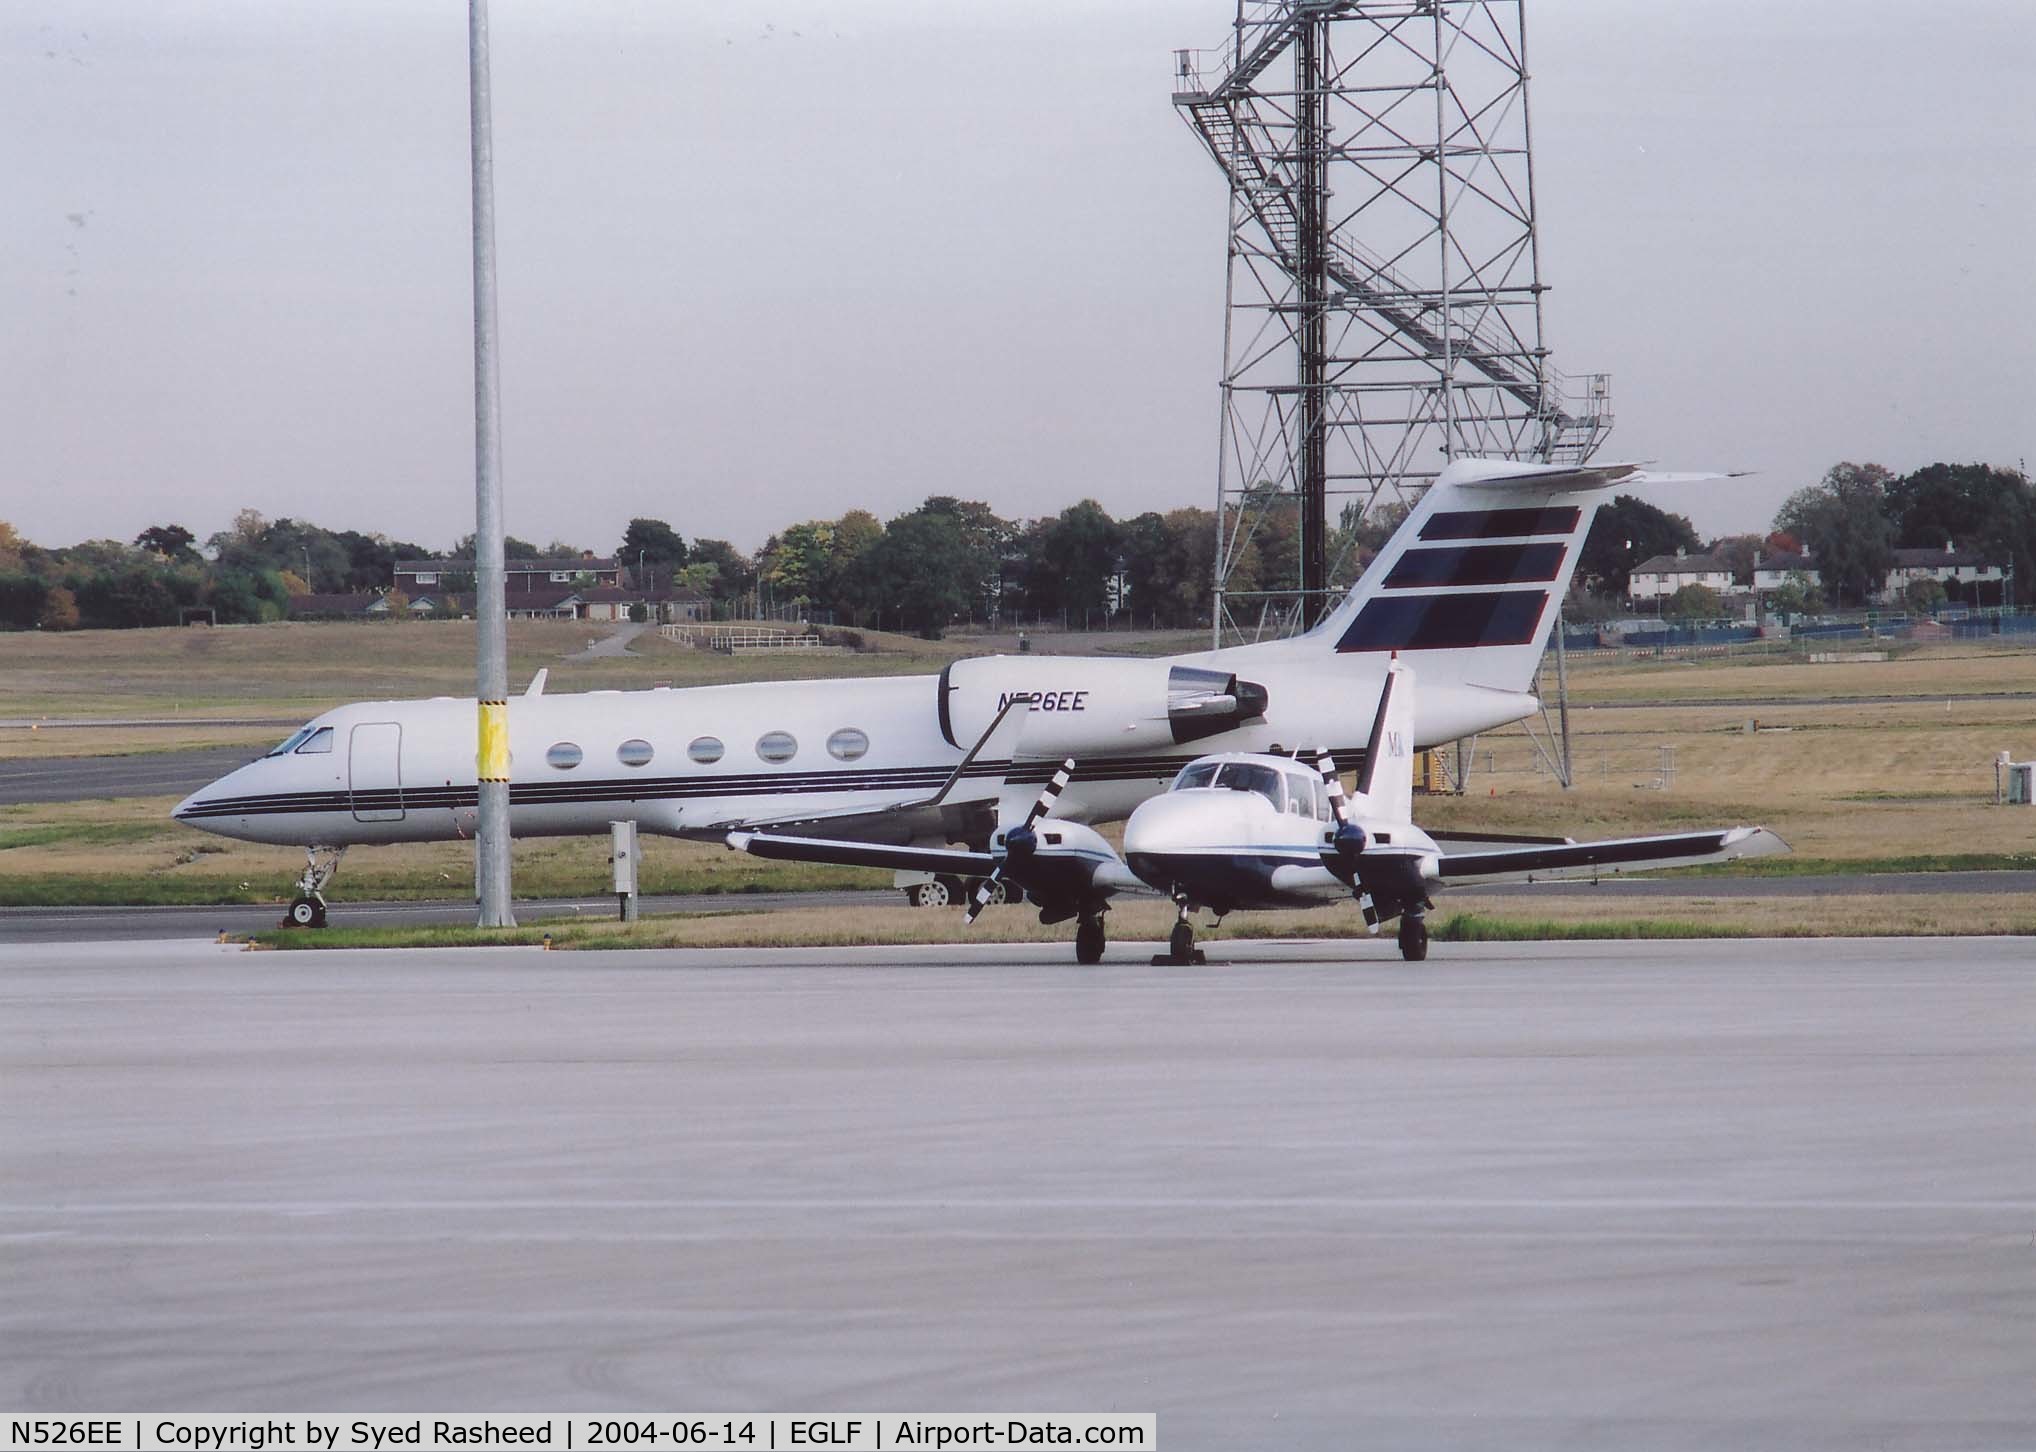 N526EE, 1997 Gulfstream Aerospace G-V C/N 519, N526EE parked at Farnborough